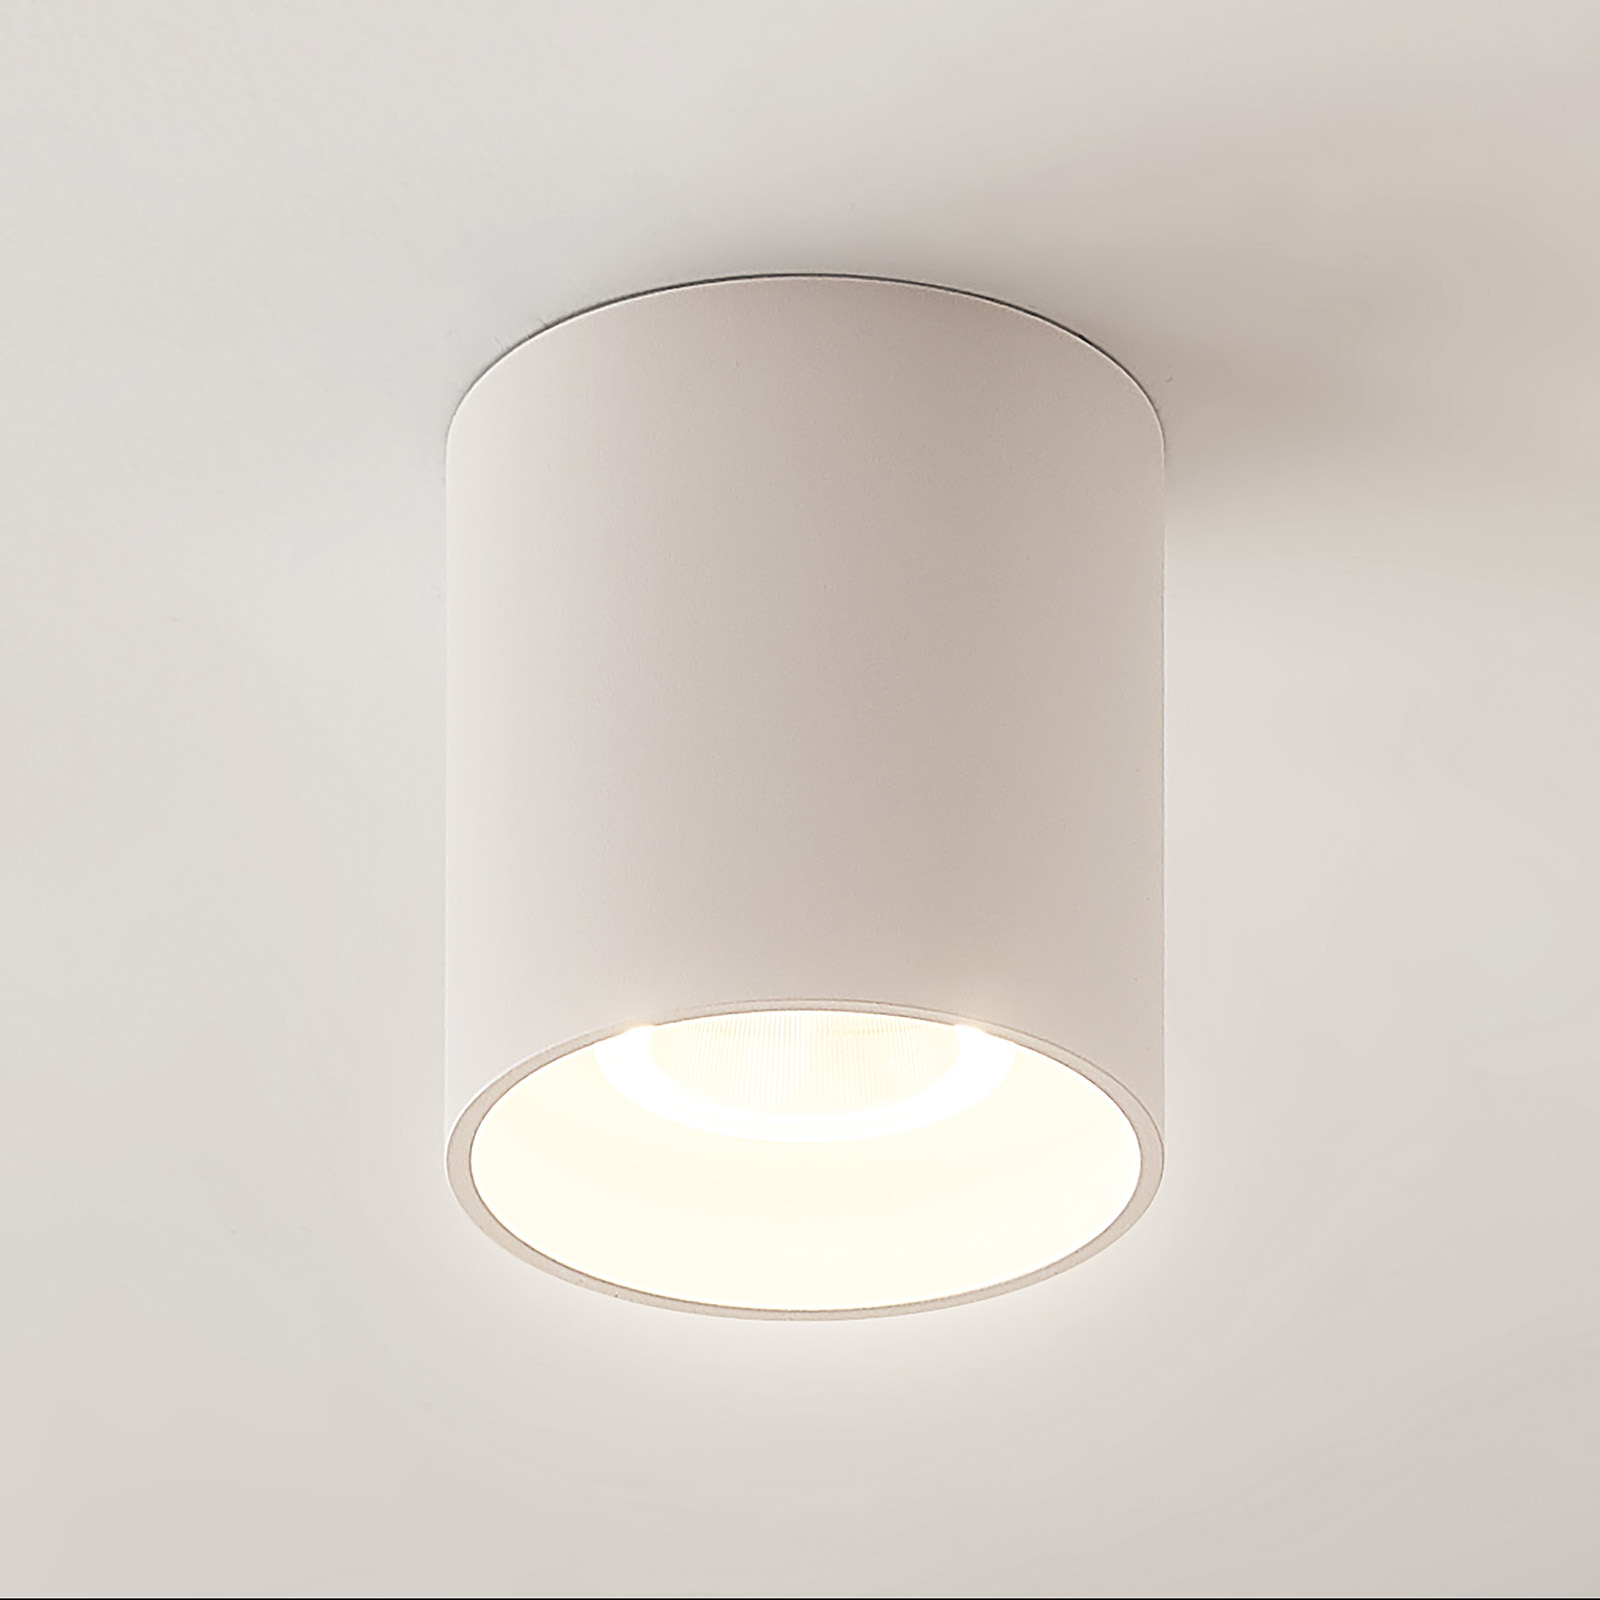 bestellen Afleiden Melodieus Arrchio LED plafondlamp Zaki rond wit | Lampen24.nl